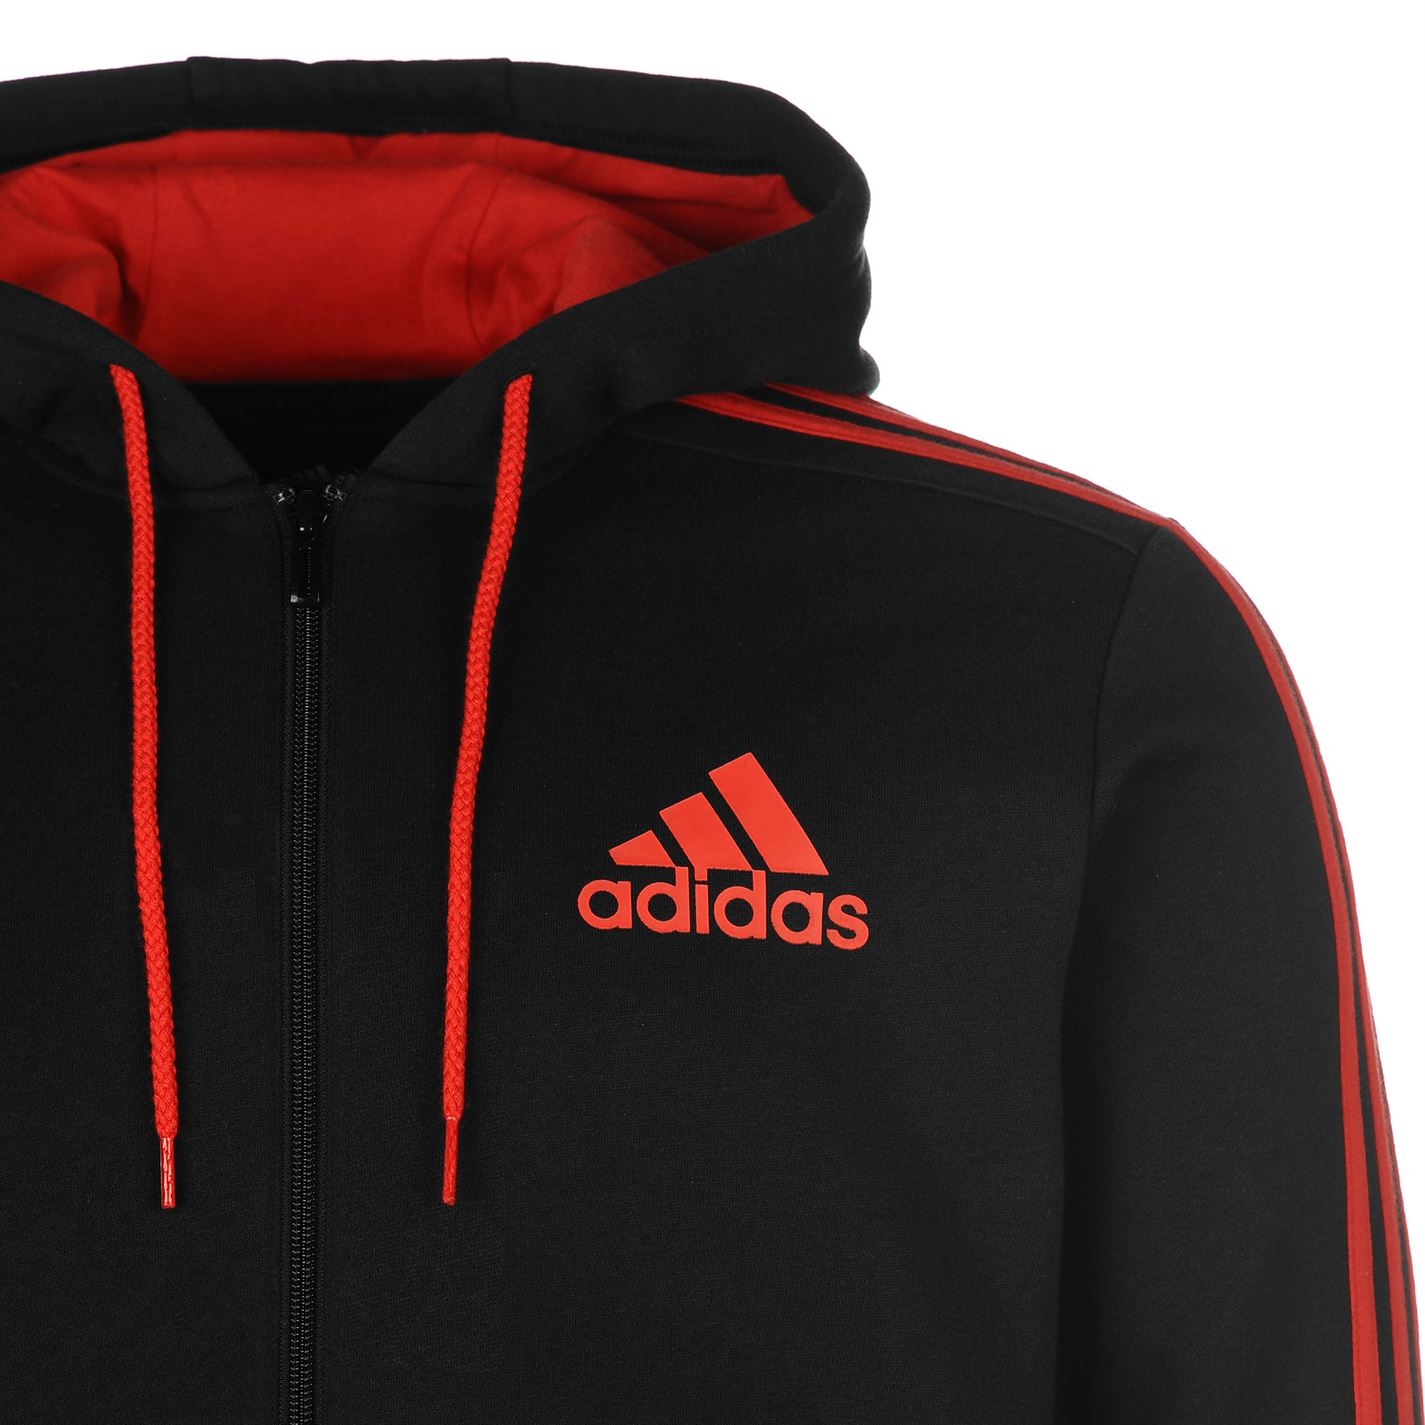 adidas black red hoodie